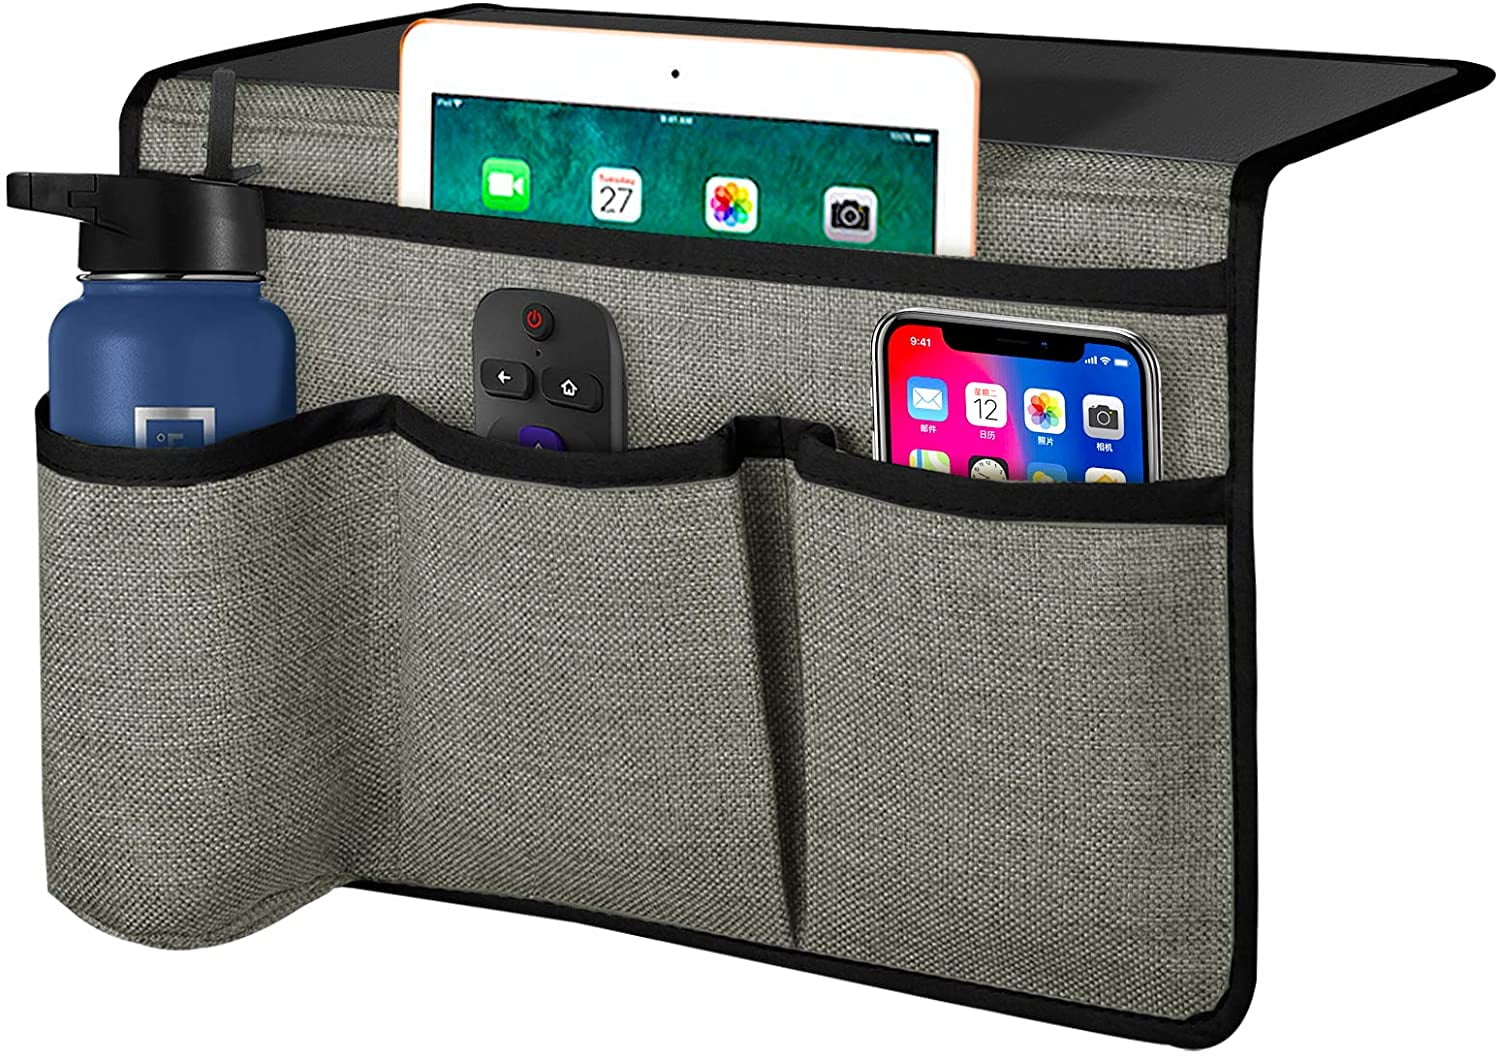 mDesign Bedside Organiser — Hanging Bedside Storage Unit with 4 Pockets — Bedside Pocket for Holding Phones Remote Controls and More — Light Grey Bottles